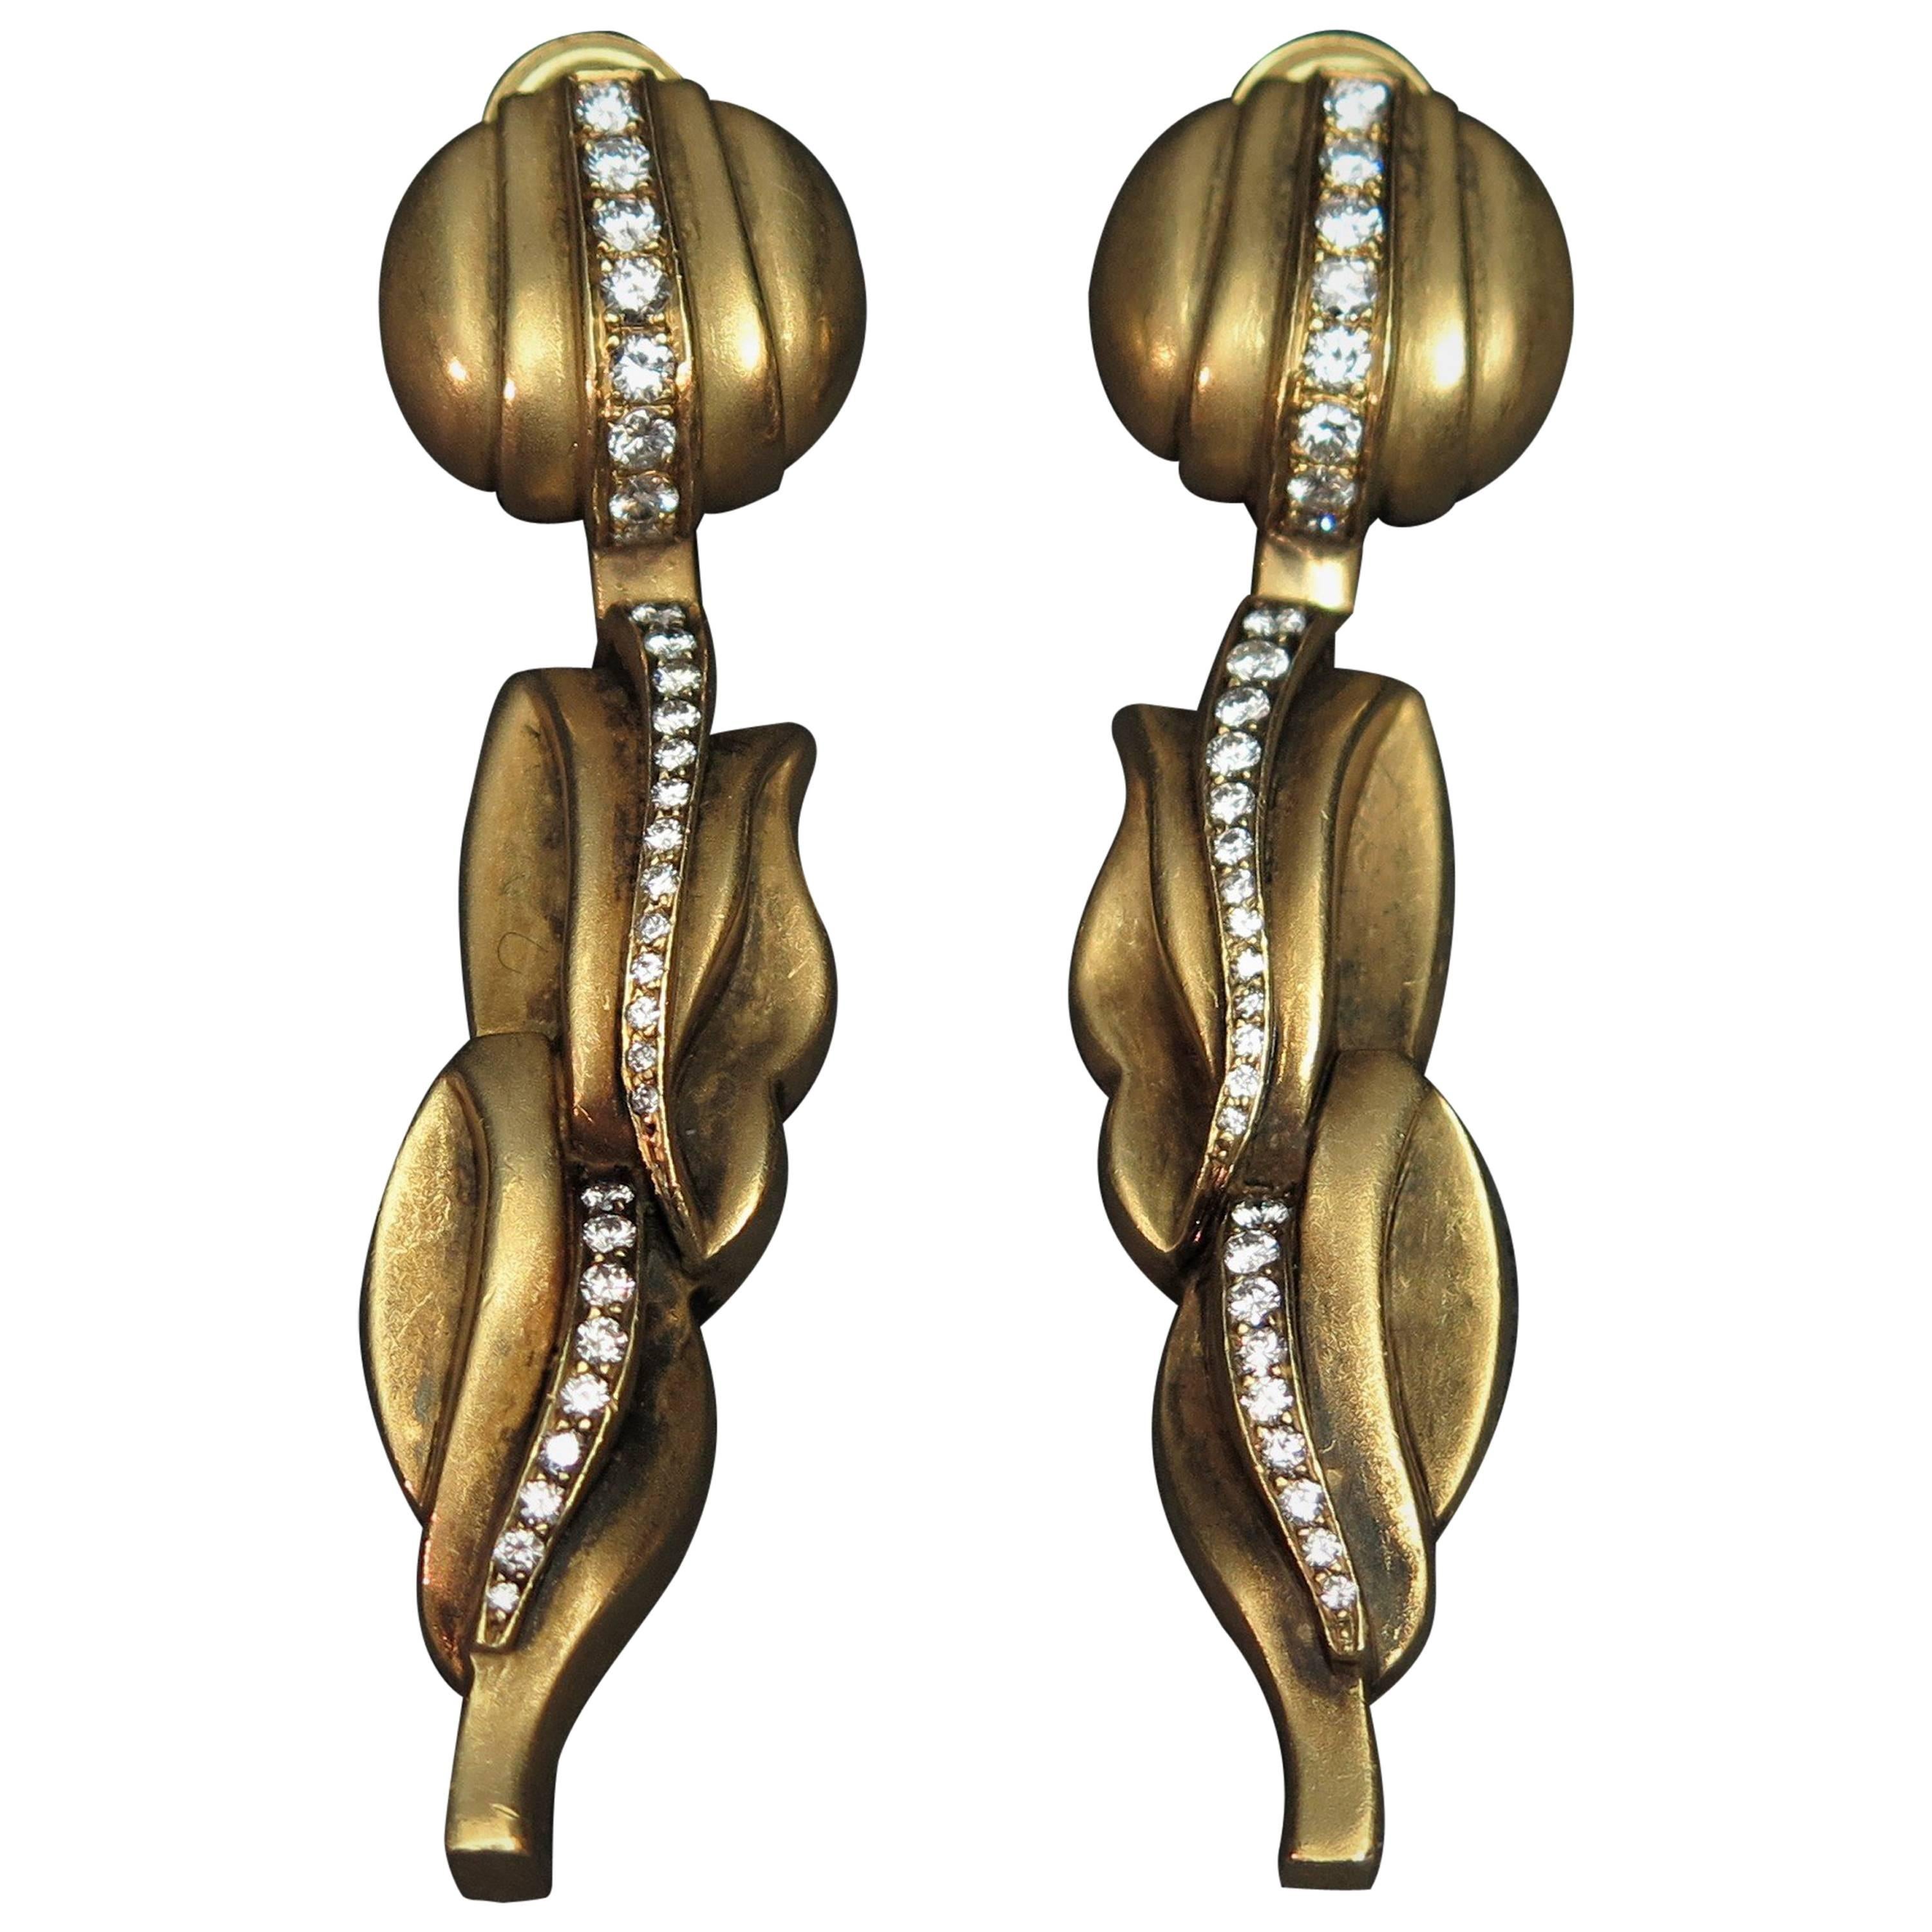 Kieselstein-Cord Diamond Gold Drop Pendant Clip Earrings